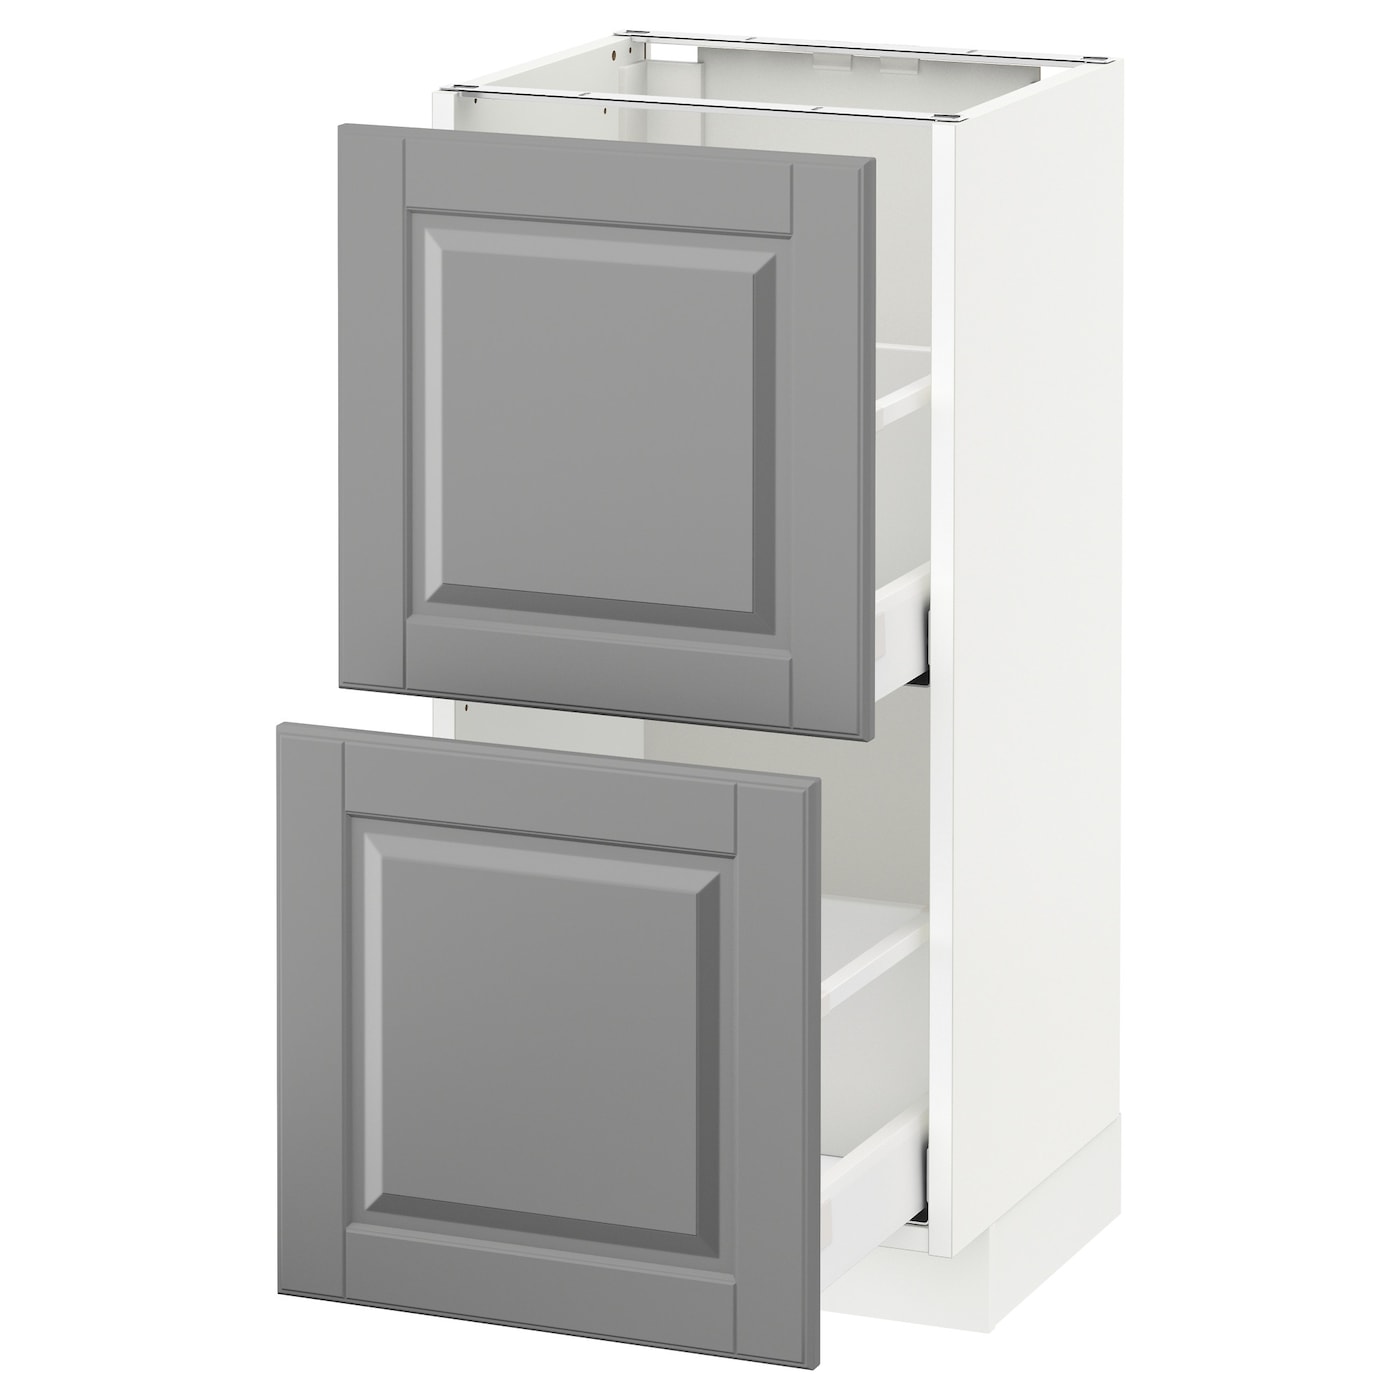 Напольный шкаф - IKEA METOD MAXIMERA, 88x39,5x40см, белый/серый, МЕТОД МАКСИМЕРА ИКЕА